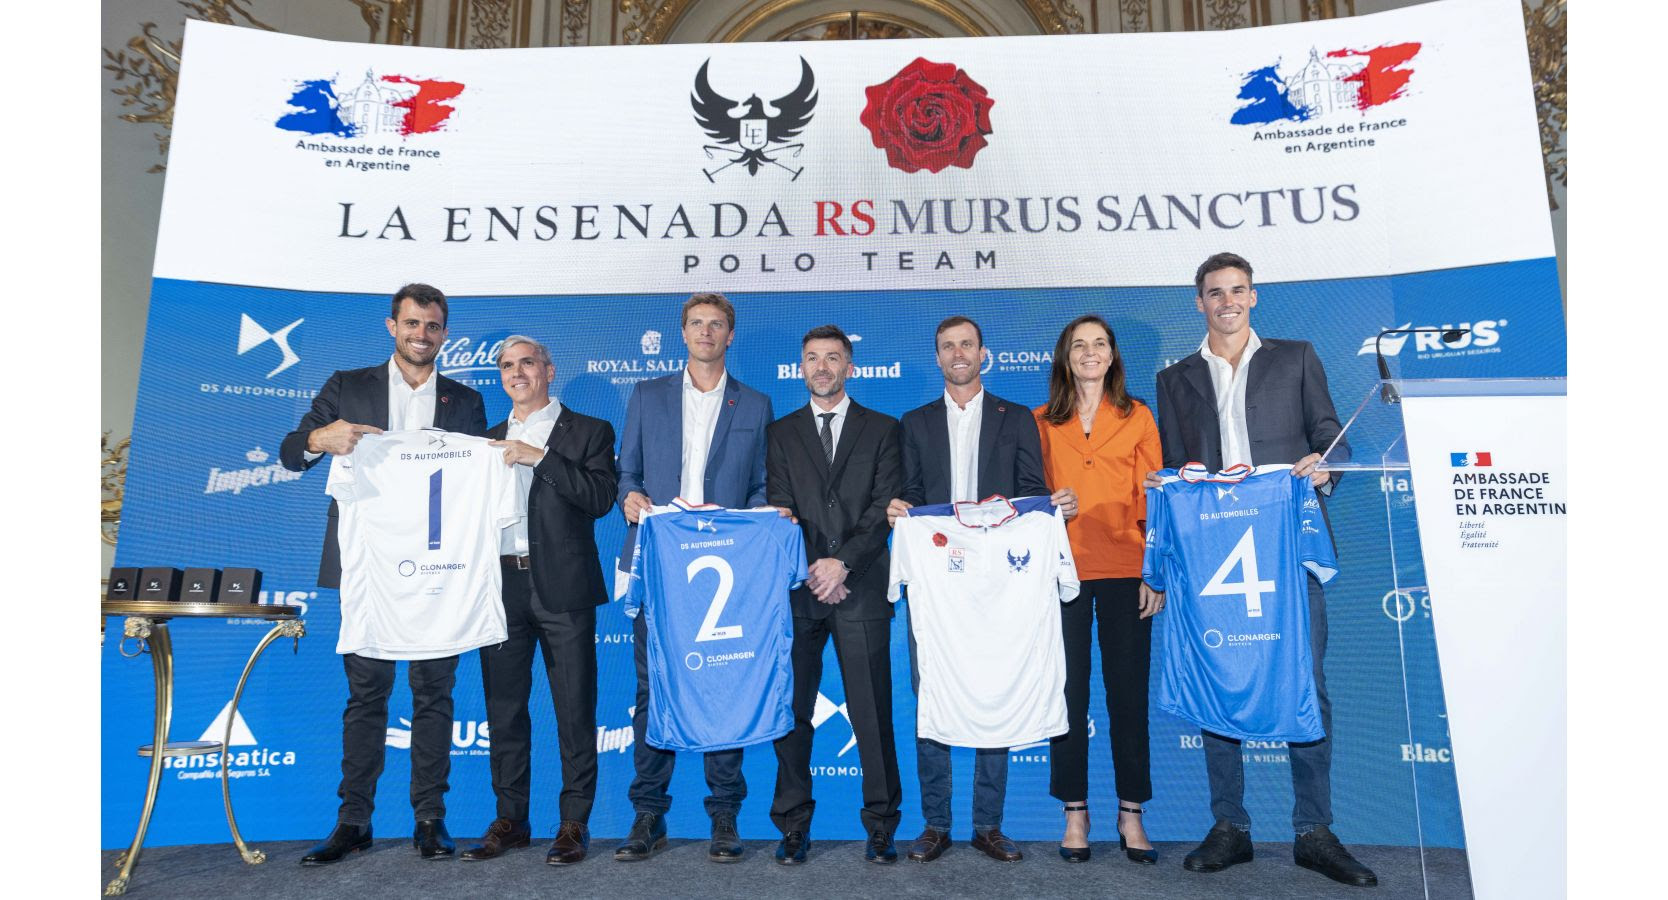 DS AUTOMOBILES junto a La Ensenada RS Murus Sanctus Polo Team en la presentación oficial 2022